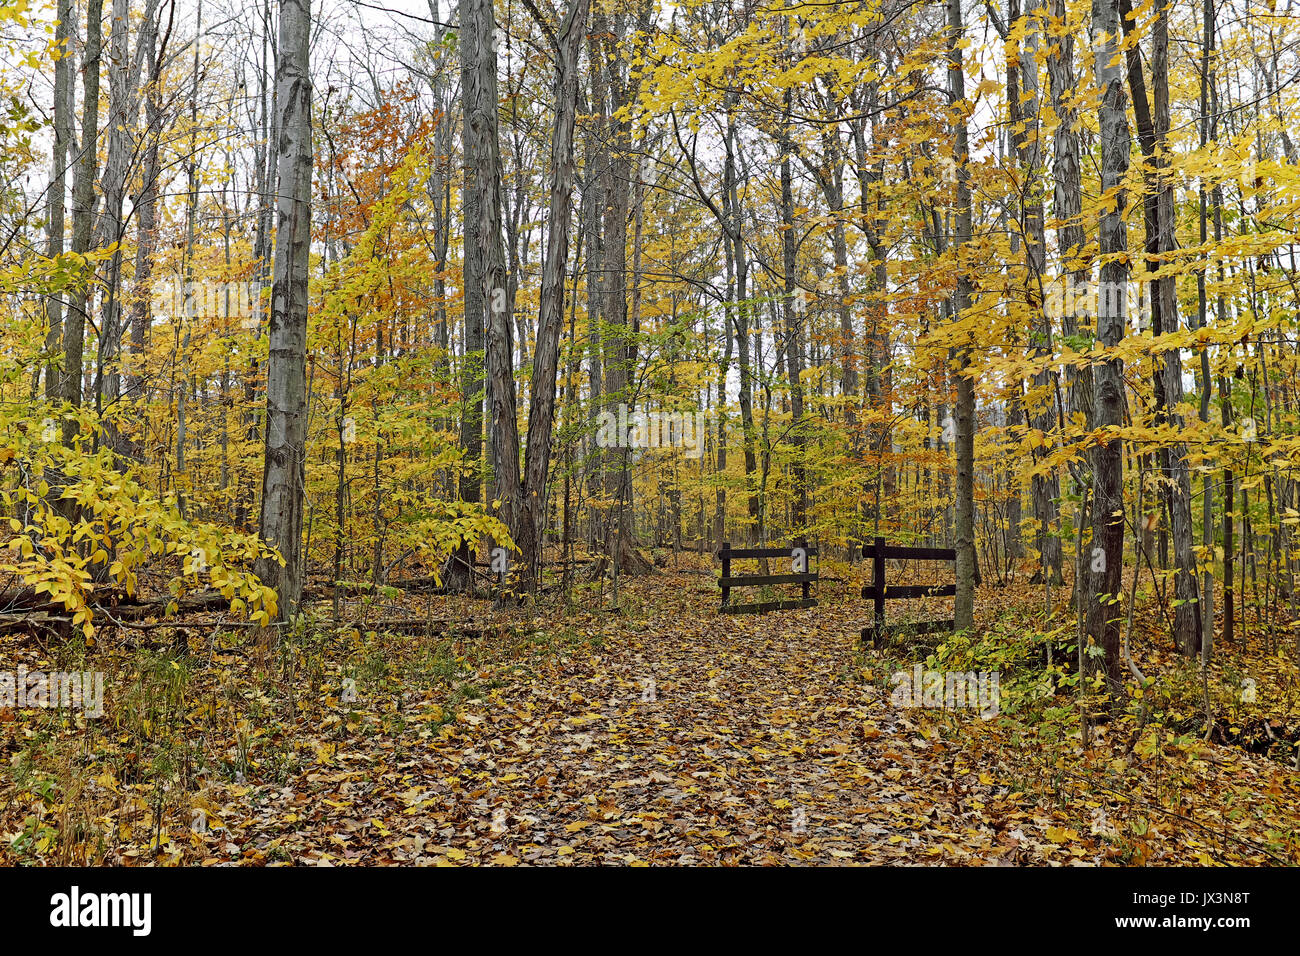 Un sito comune nel tardo autunno in Cleveland Metroparks, open access foreste pubbliche per la ricreazione. Foto Stock